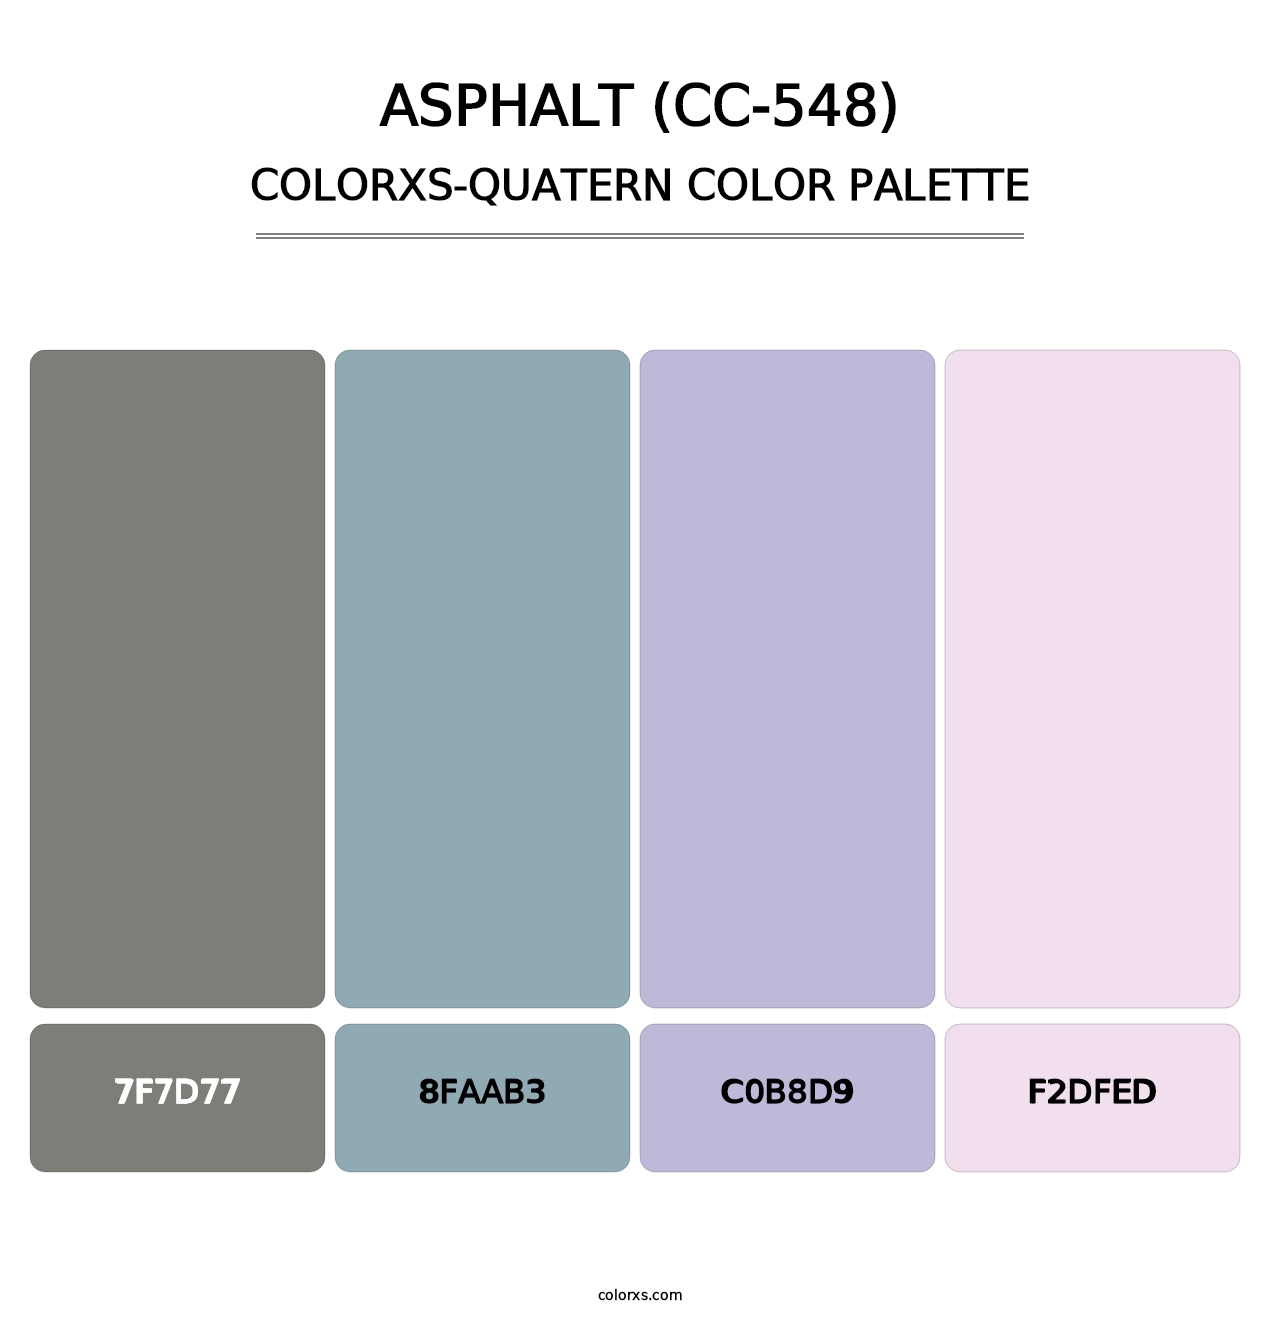 Asphalt (CC-548) - Colorxs Quatern Palette